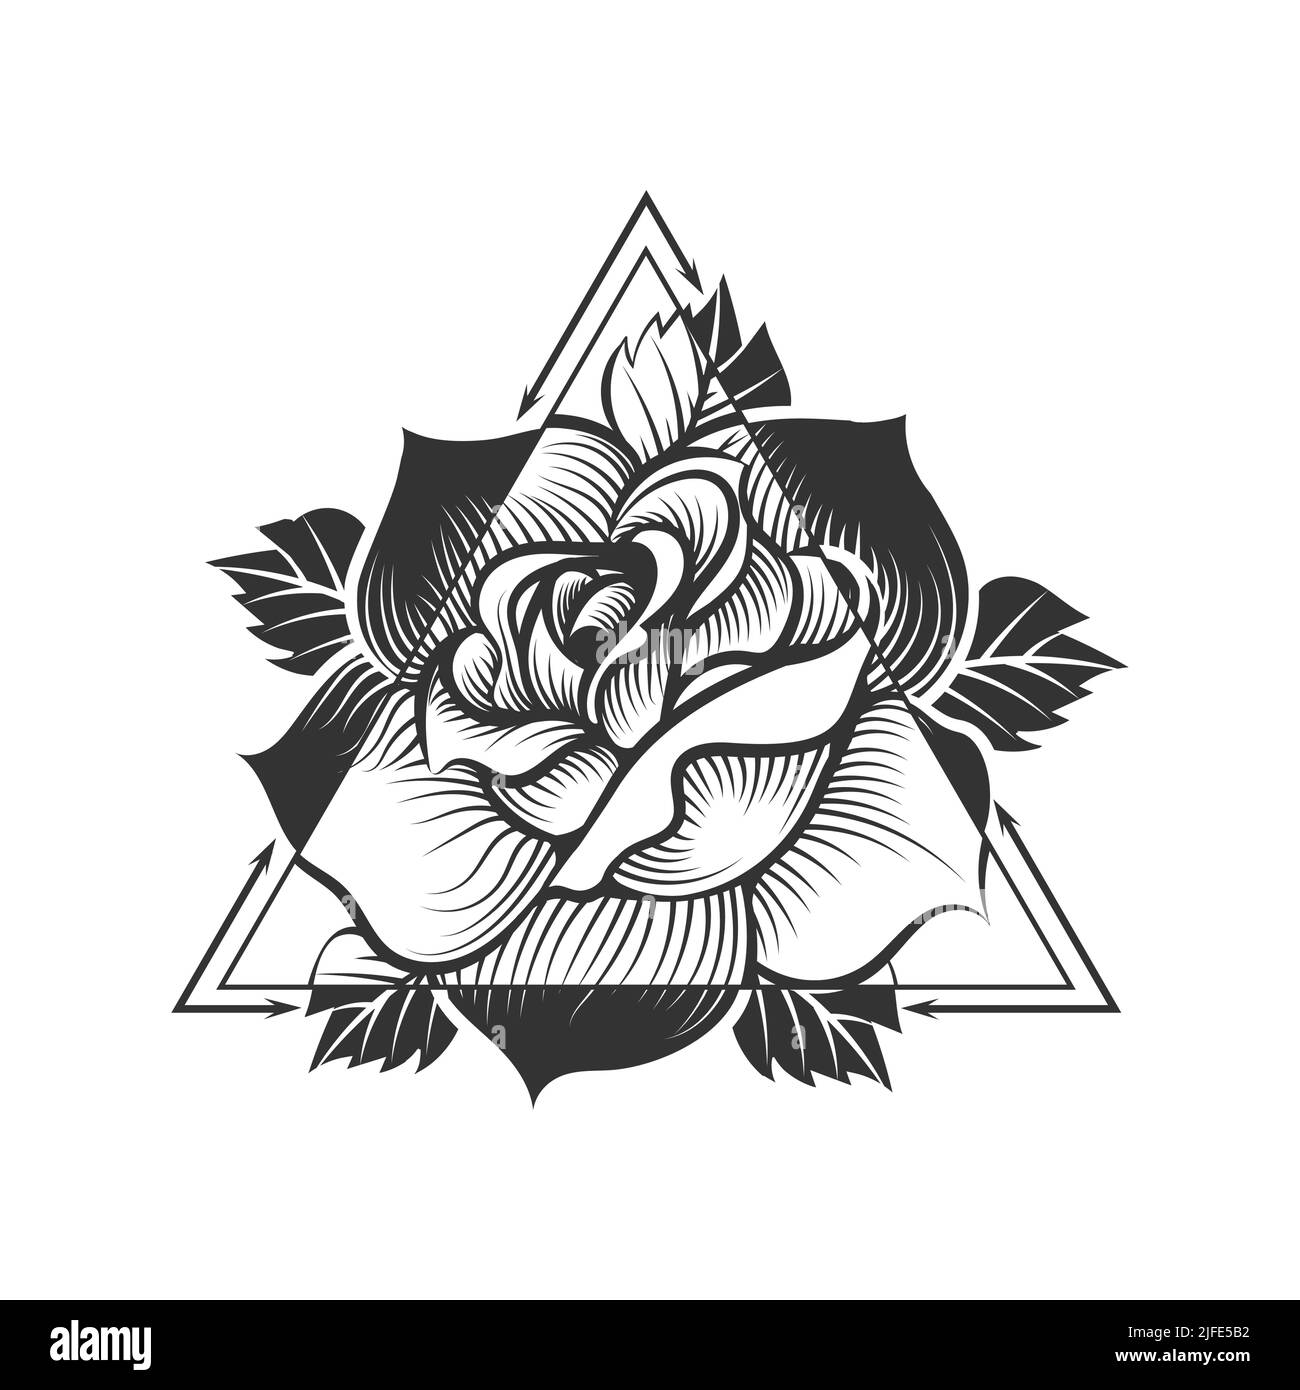 Schwarz und Weiß Mystic Tattoo der Rose Blume über Doppel-Dreieck Heilige Geometrie isoliert auf weiß. Vektorgrafik. Stock Vektor